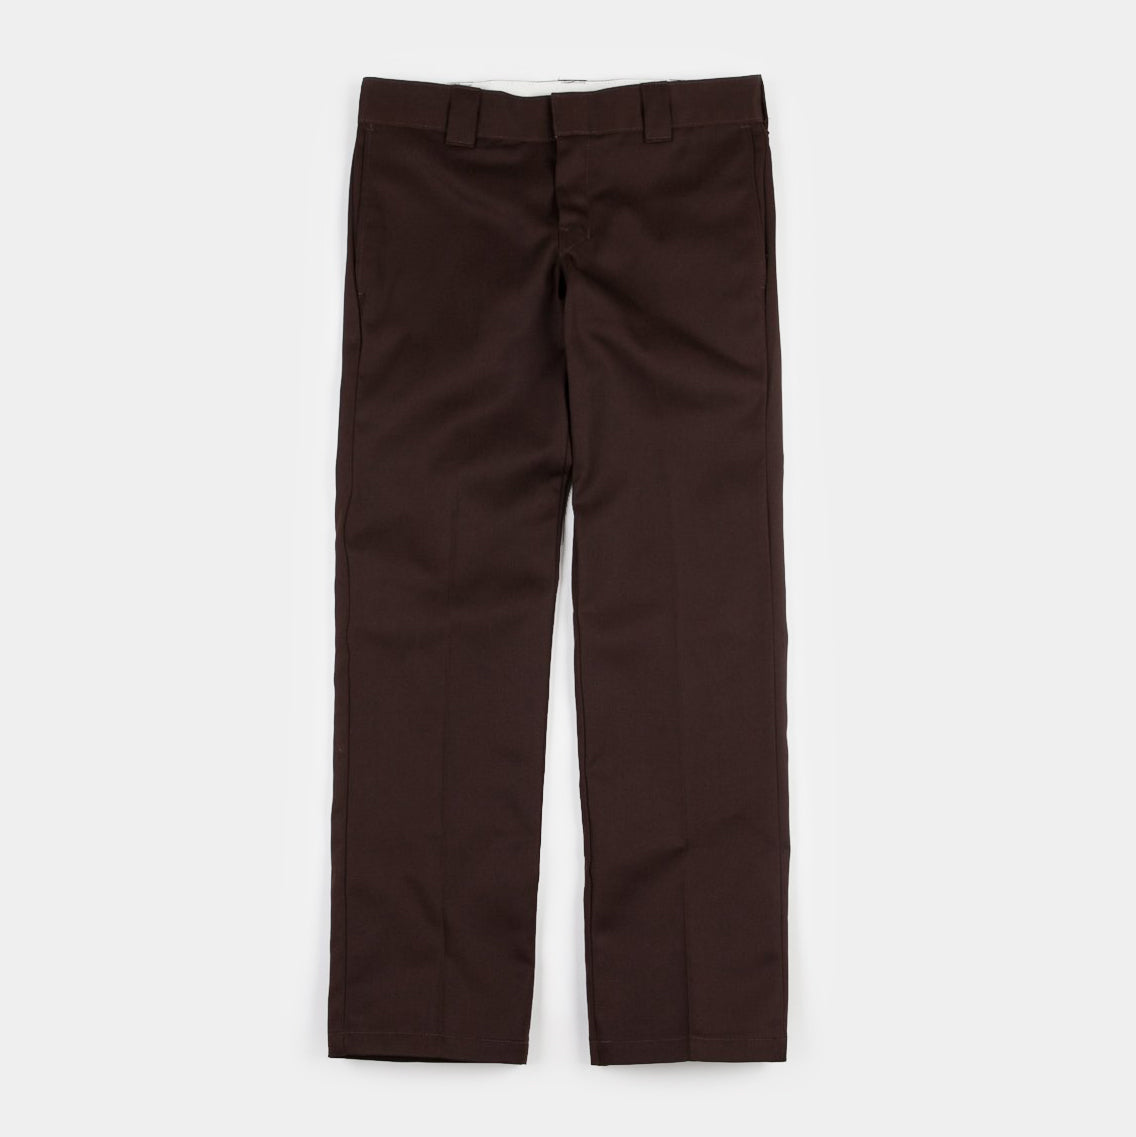 KP370-Dickies Girls KHAKI Flat Front Slim Fit Pants - American Casual -  Uniforms